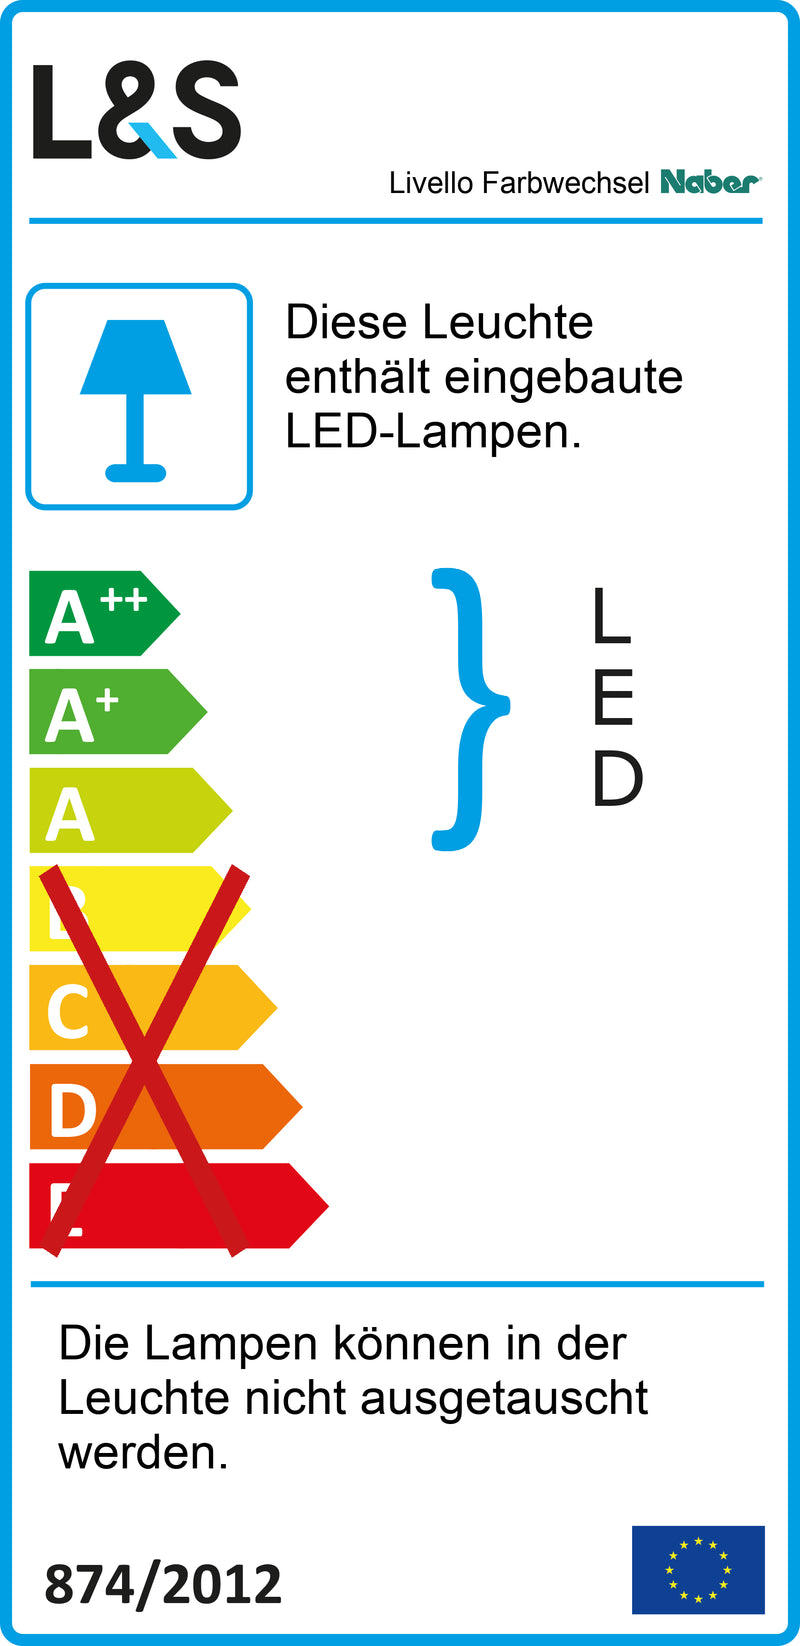 E-Label zu Zeichnung zu Livello Farbwechsel LED als Variante Set-2, schwarz von Naber GmbH in der Kategorie Lichttechnik in Österreich auf conceptshop.at